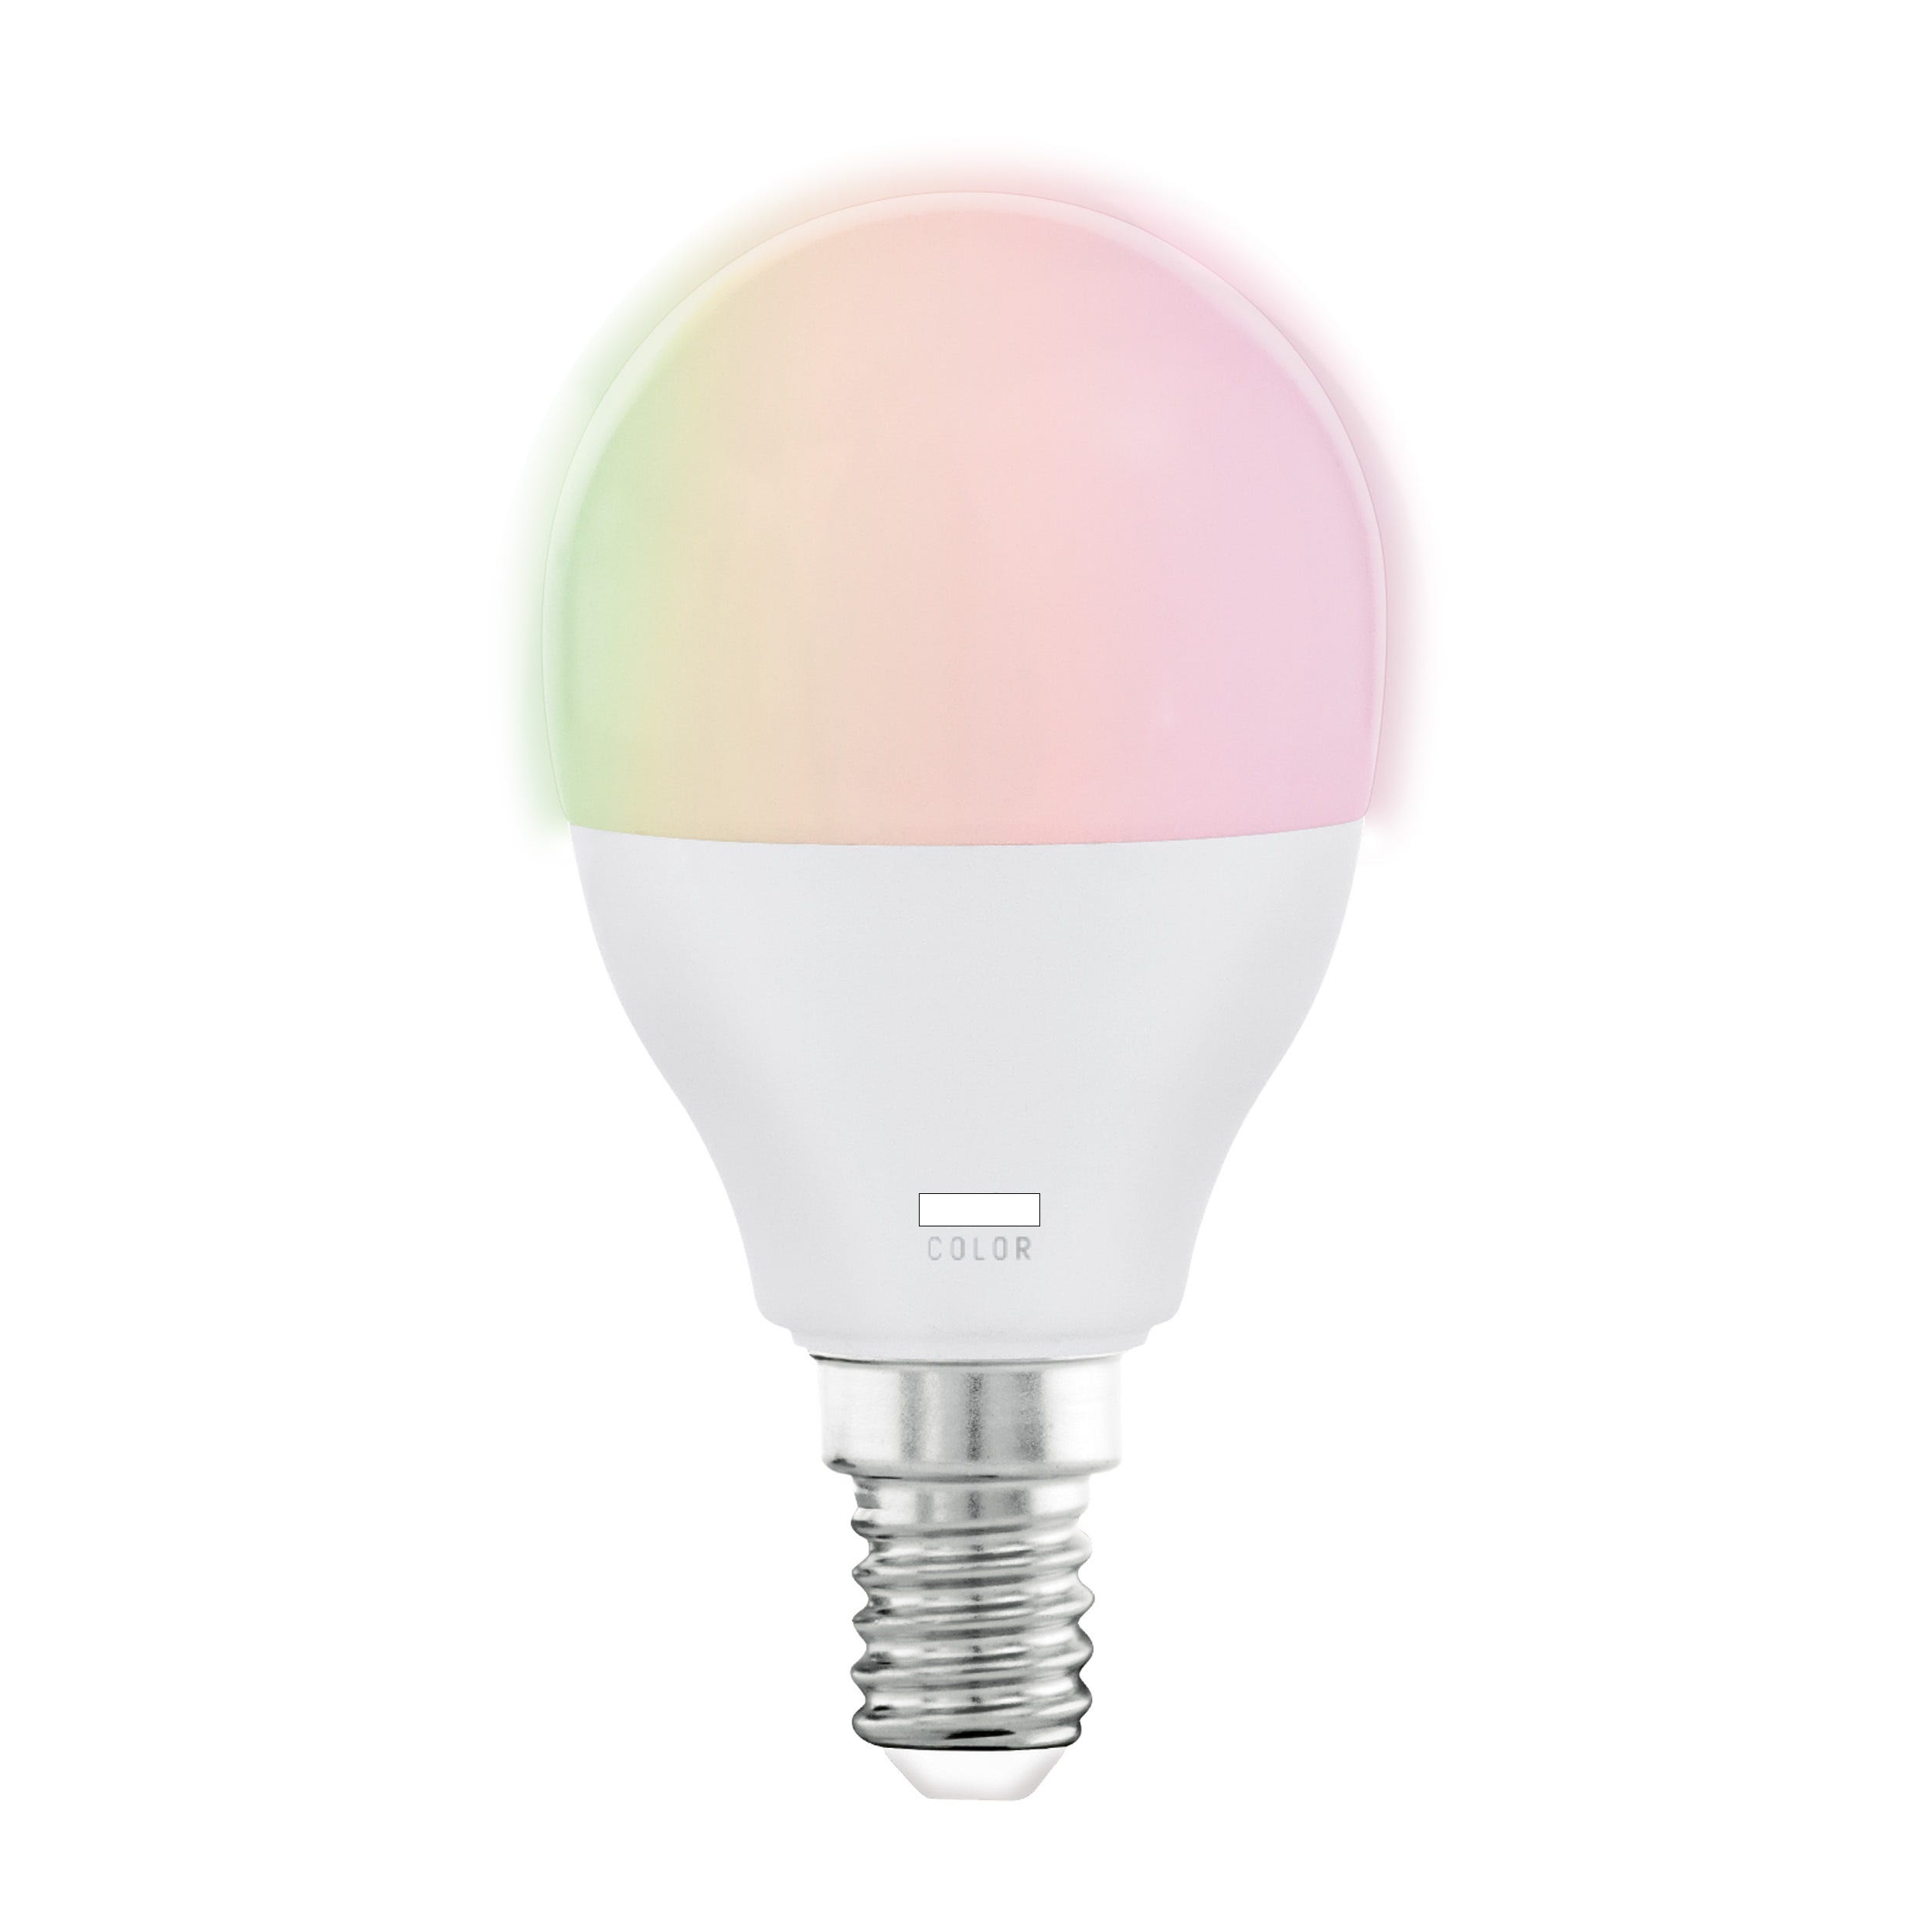 Calex ampoule Smart LED flamme RGB - blanche - 5W